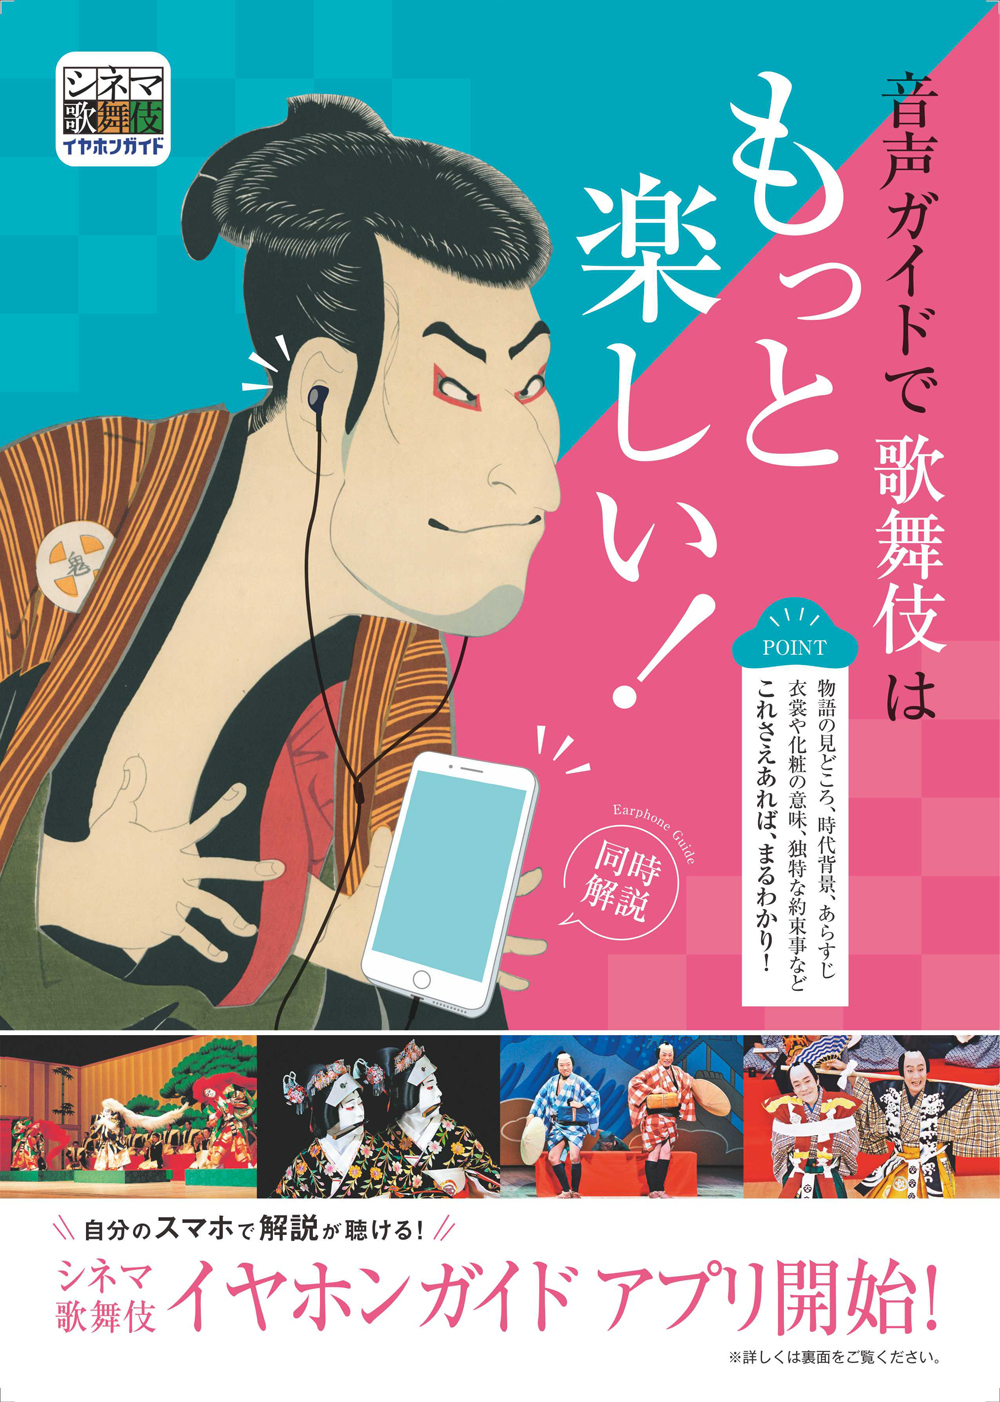 「シネマ歌舞伎イヤホンガイド」アプリ、《月イチ歌舞伎》に合わせて音声ガイドを配信中